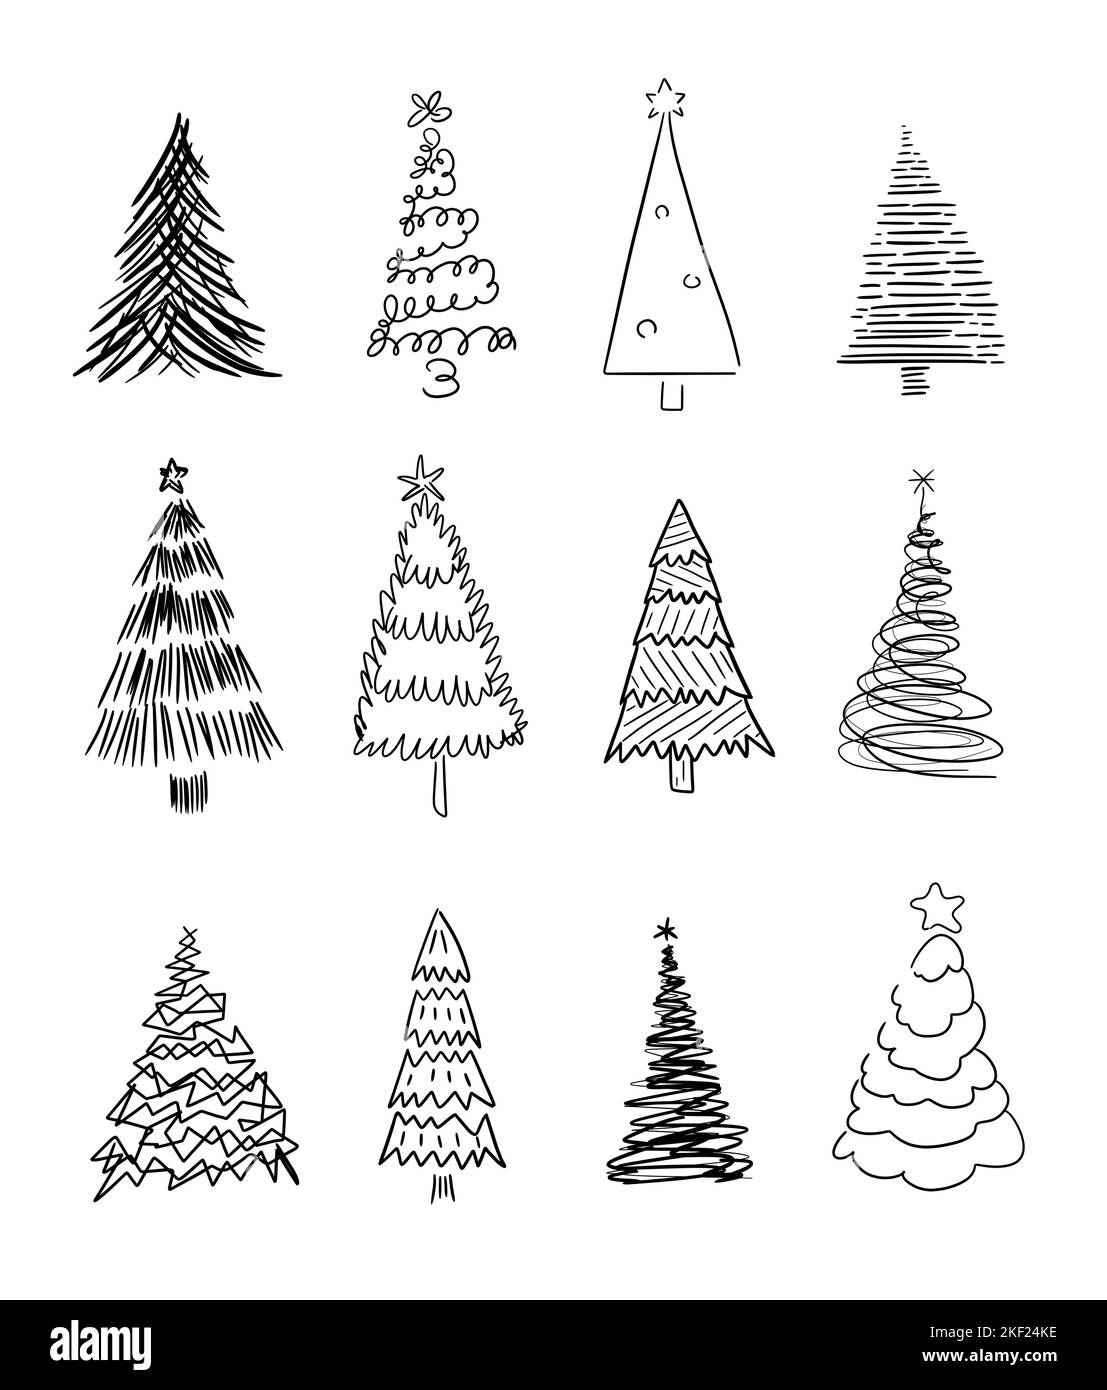 Handgezeichneter Weihnachtsbaum Doodle Illustration Set. Funky, seltsam und exzentrisch Weihnachtsbaum Zeichnung Sammlung. Stock Vektor